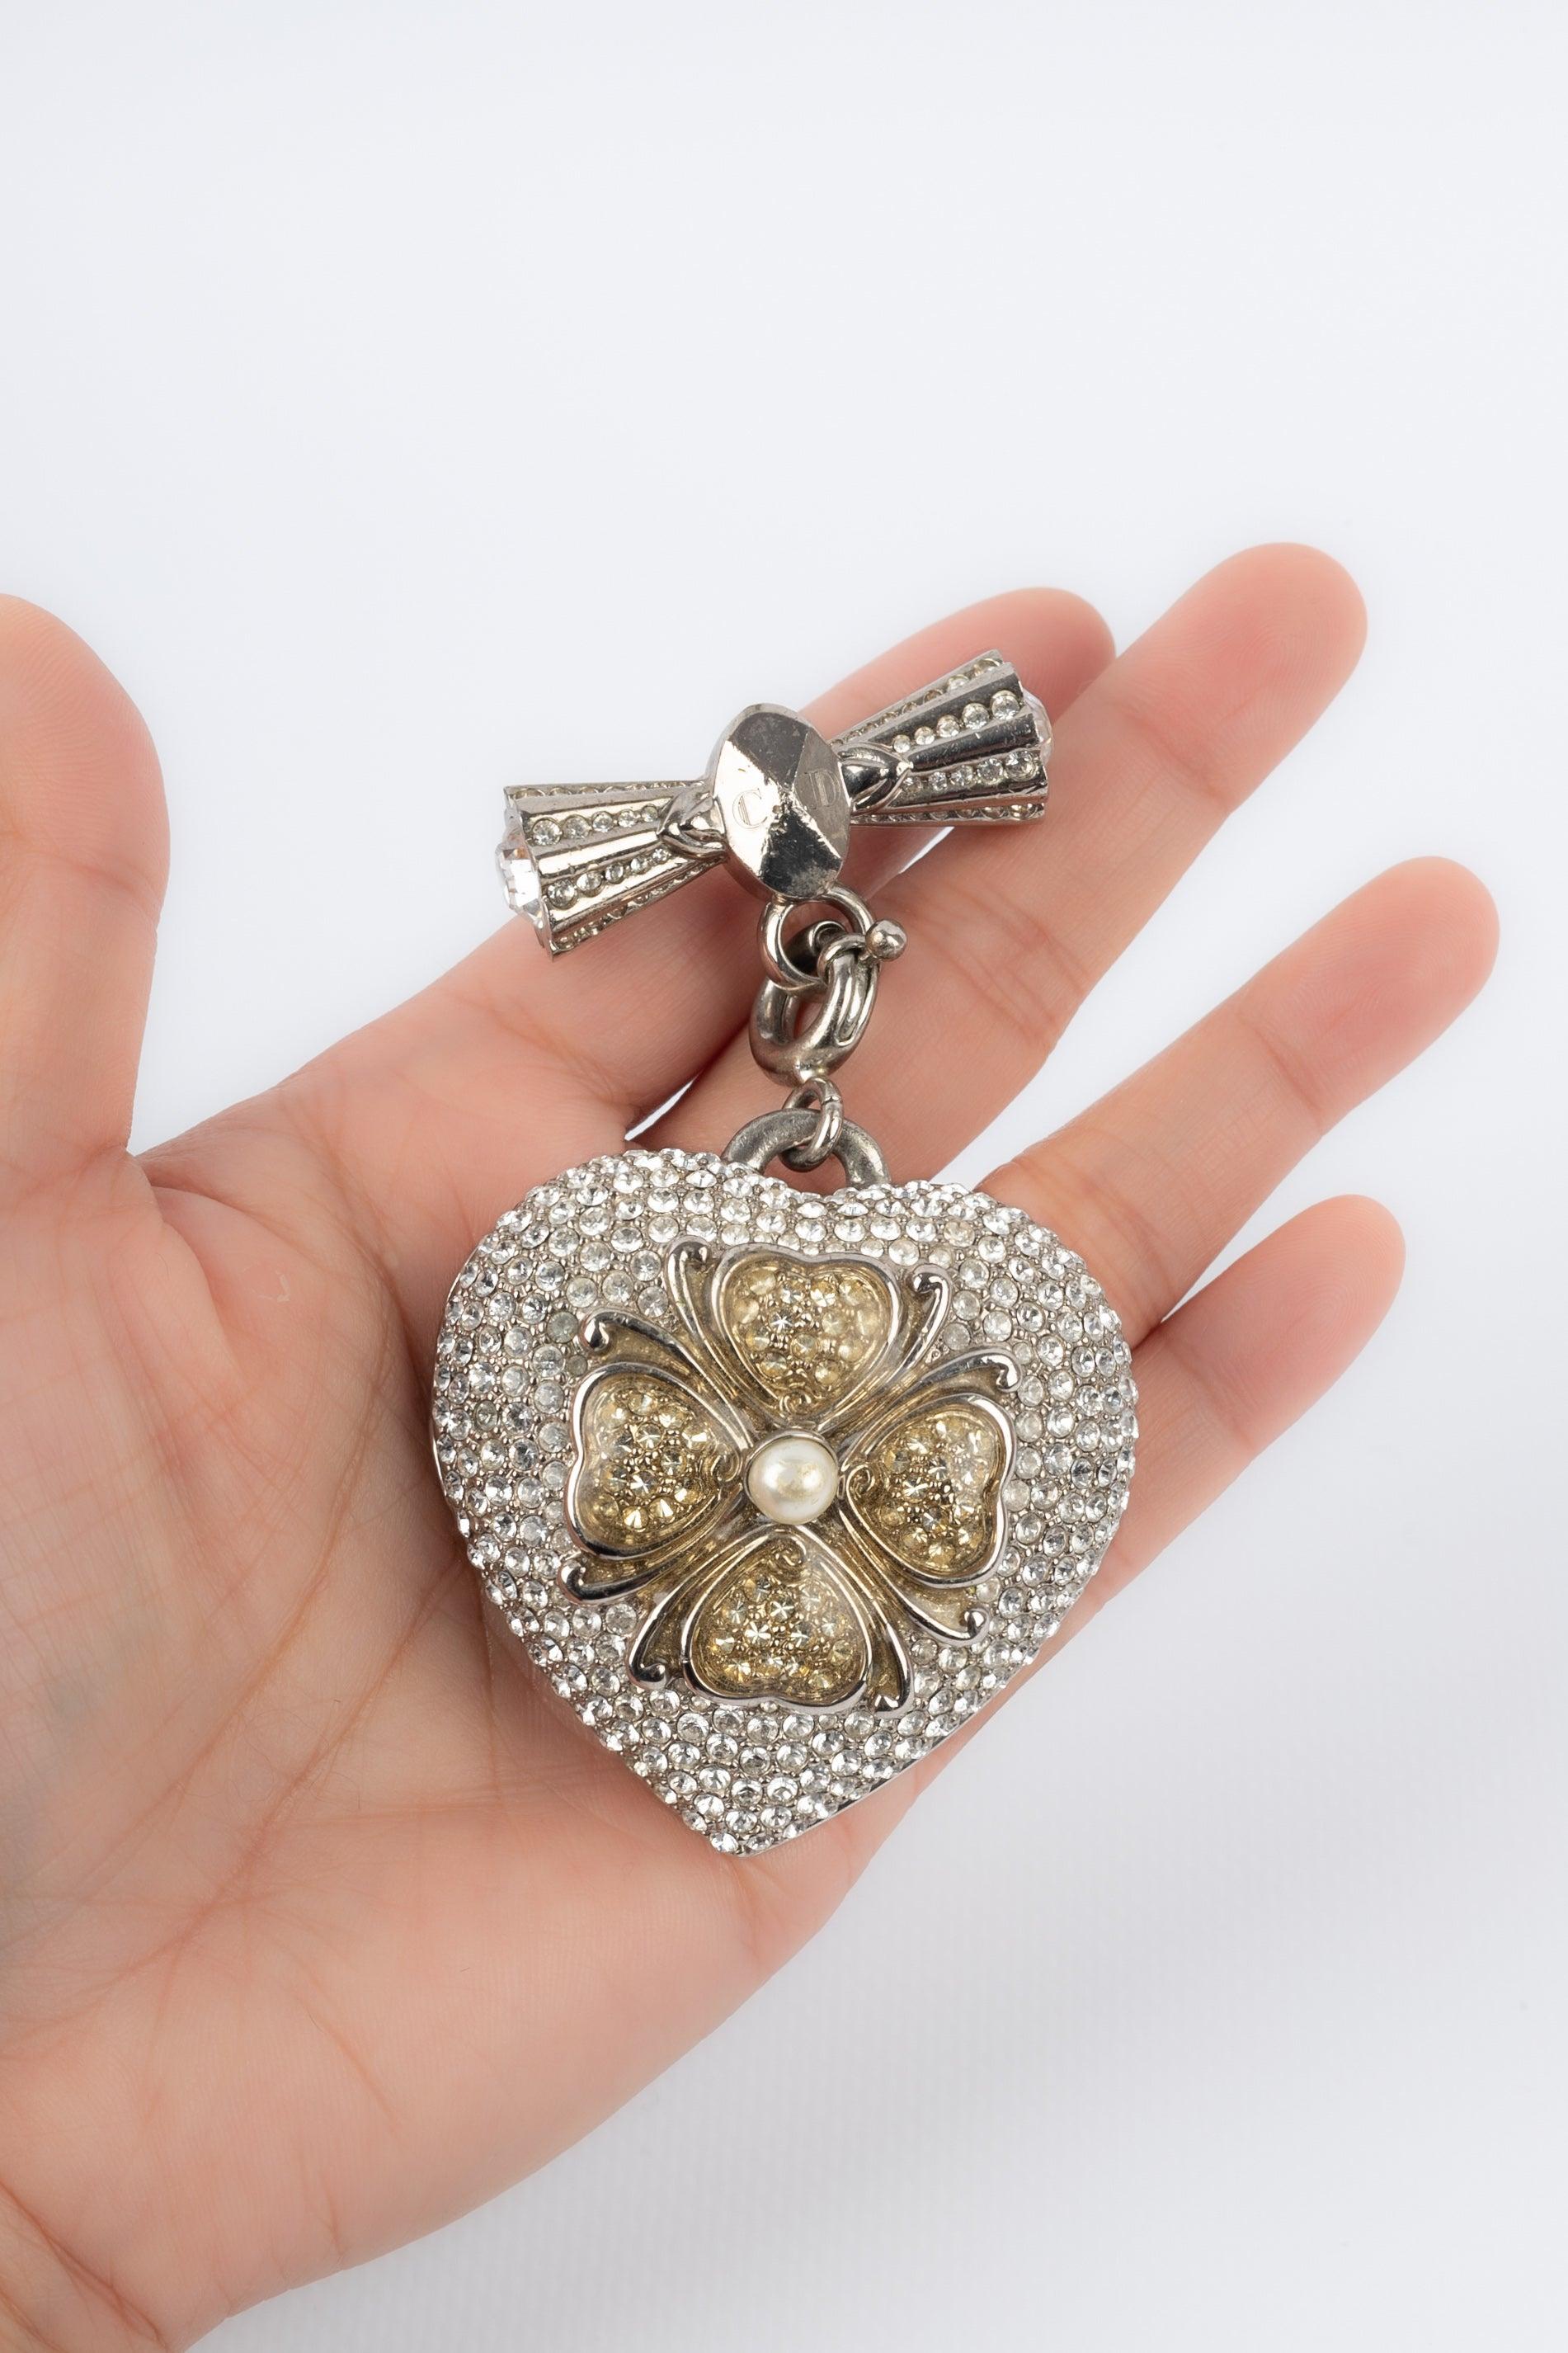 Dior- Broche en métal argenté avec strass représentant un cœur surmonté d'un trèfle à quatre feuilles. Le pendentif contient un miroir. A signaler, quelques rayures sur le métal.

Informations complémentaires :
Condit : Bon état
Dimensions : 8,5 cm